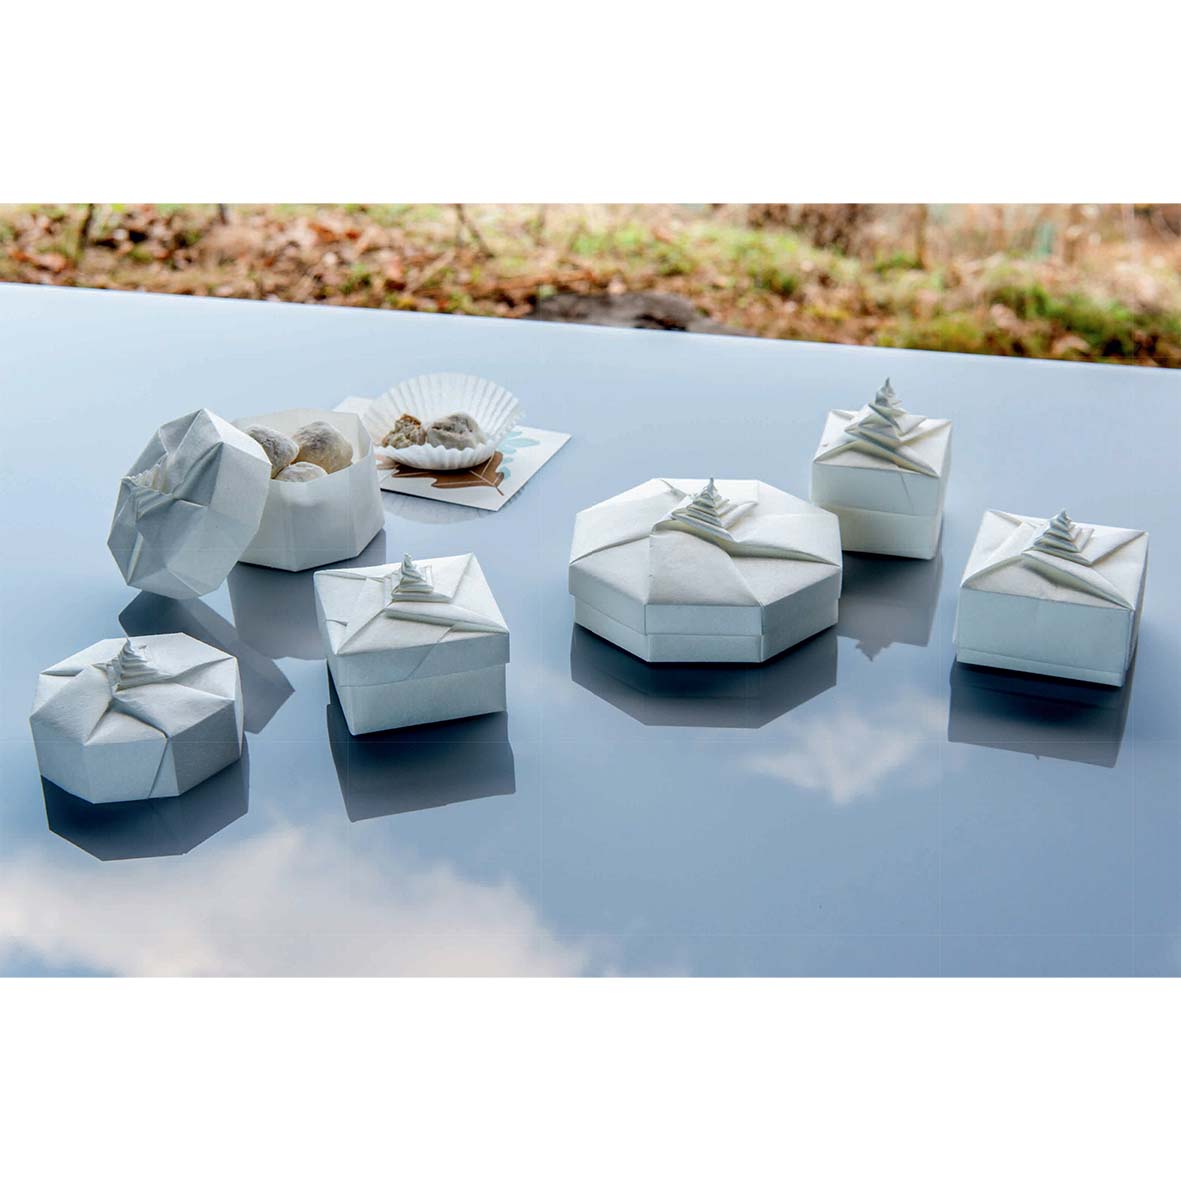 Tomoko Fuse - L'arte della scatola in origami